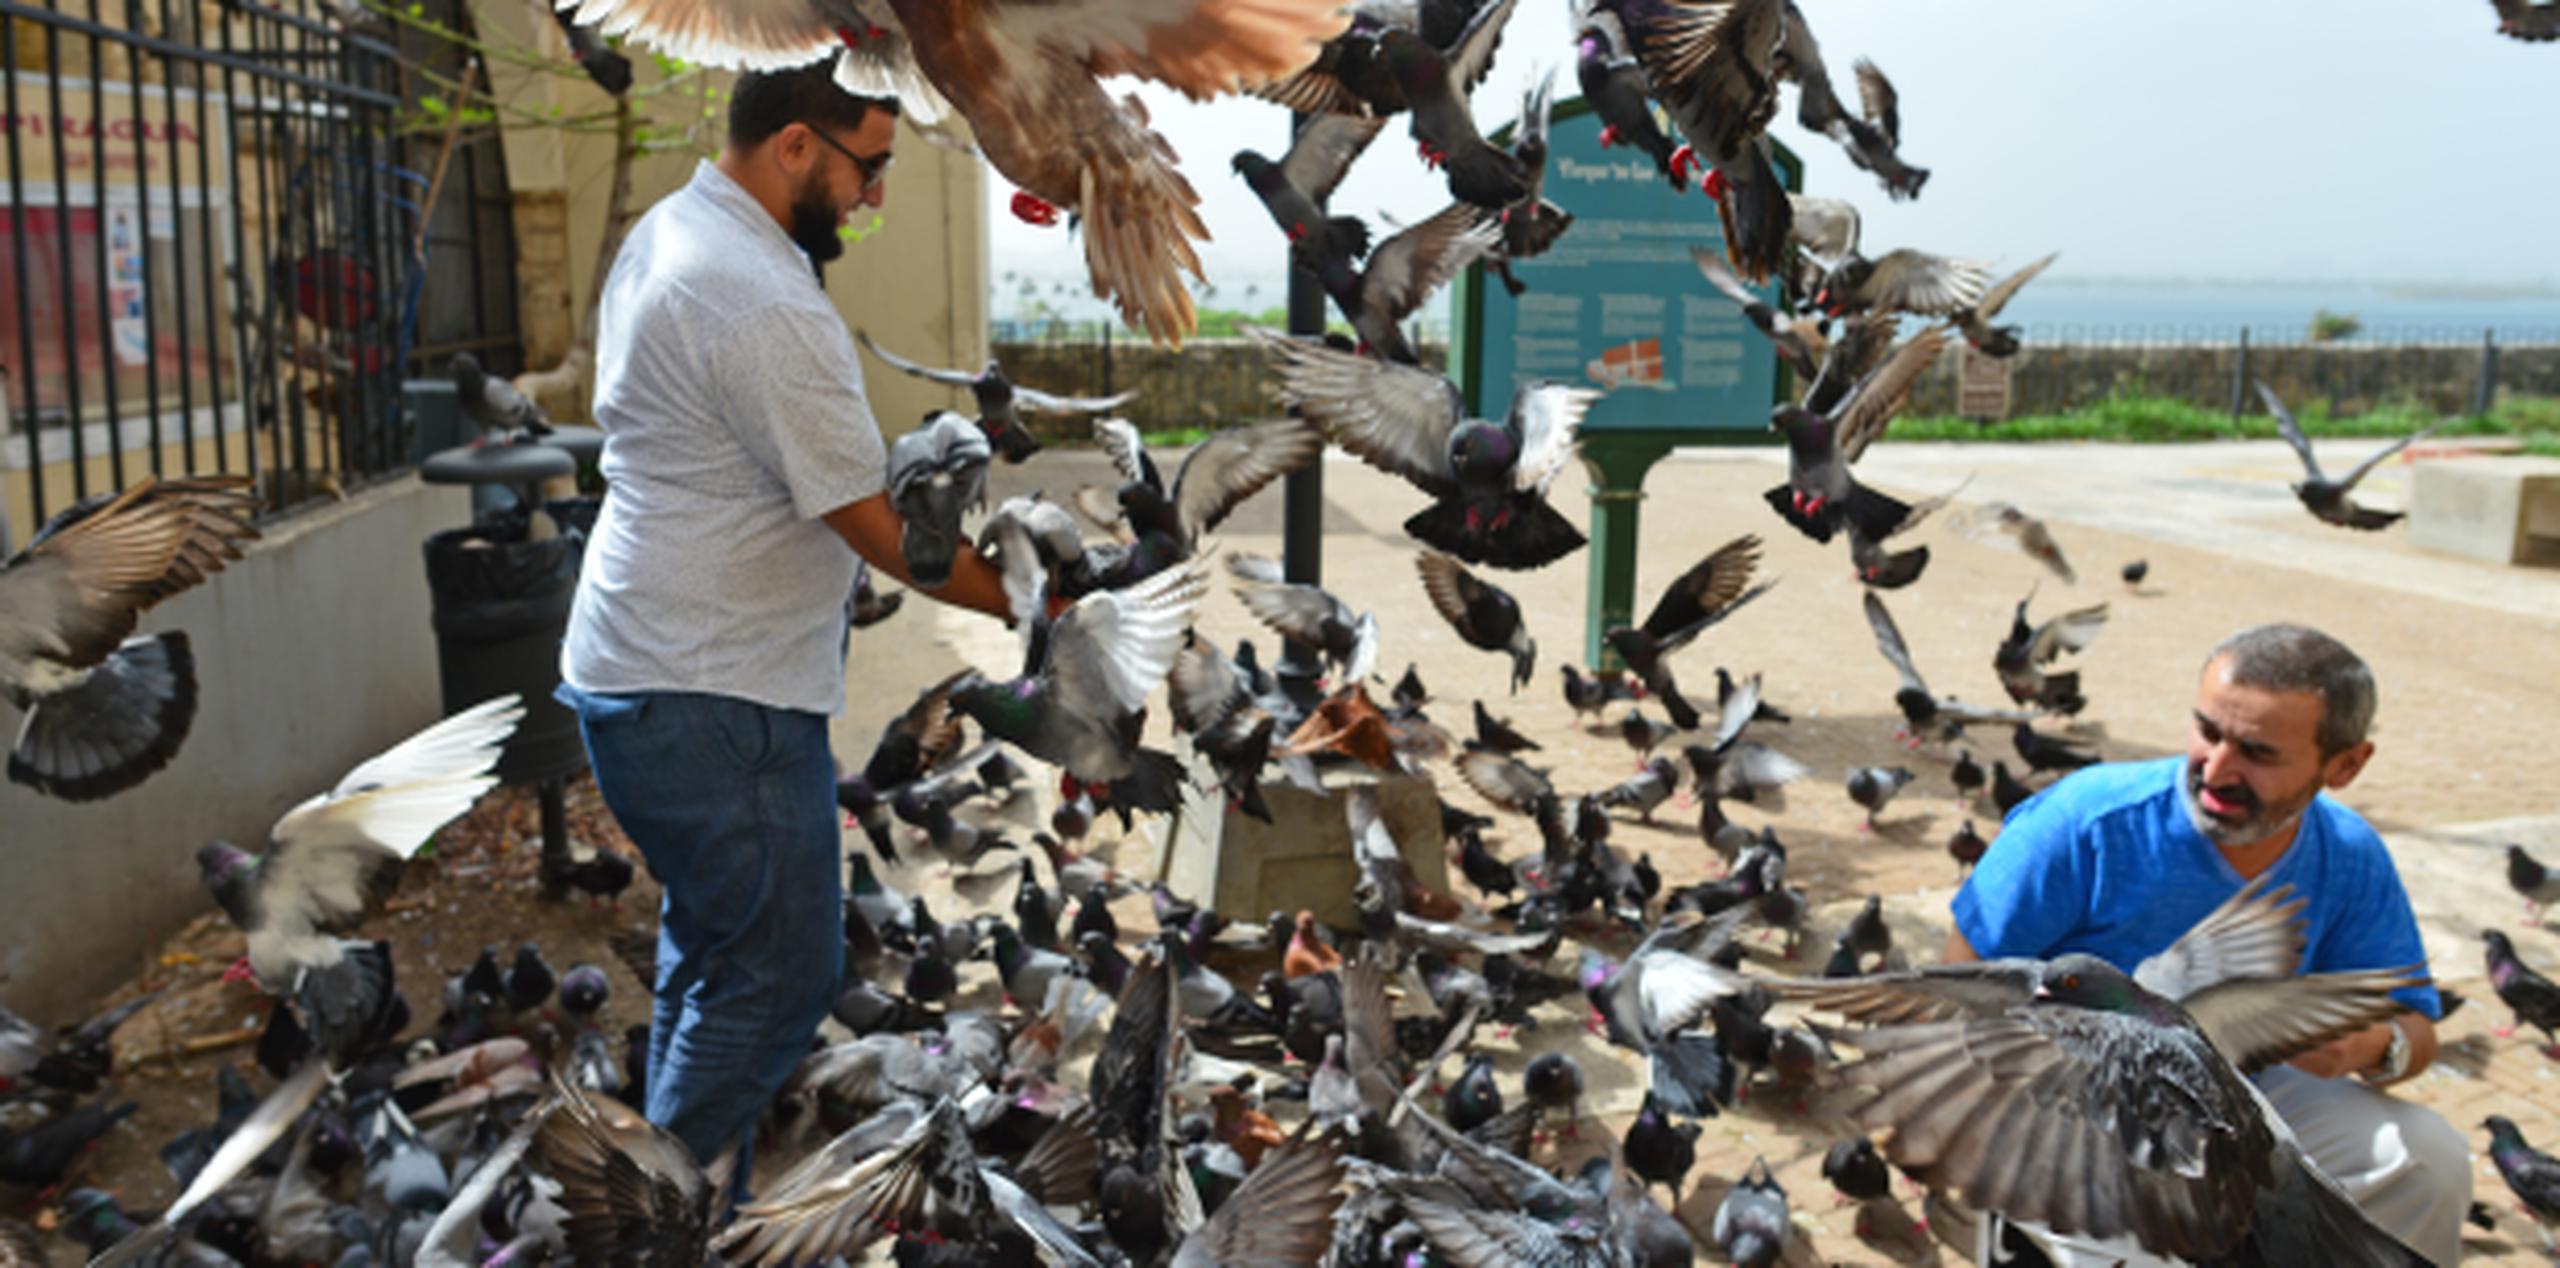 Aunque murieron varias, la población de aves –a juicio de quienes se pasan en el lugar- continúa estable y los visitantes no se han olvidado de ellas. (luis.alcaladelolmo@gfrmedia.com)